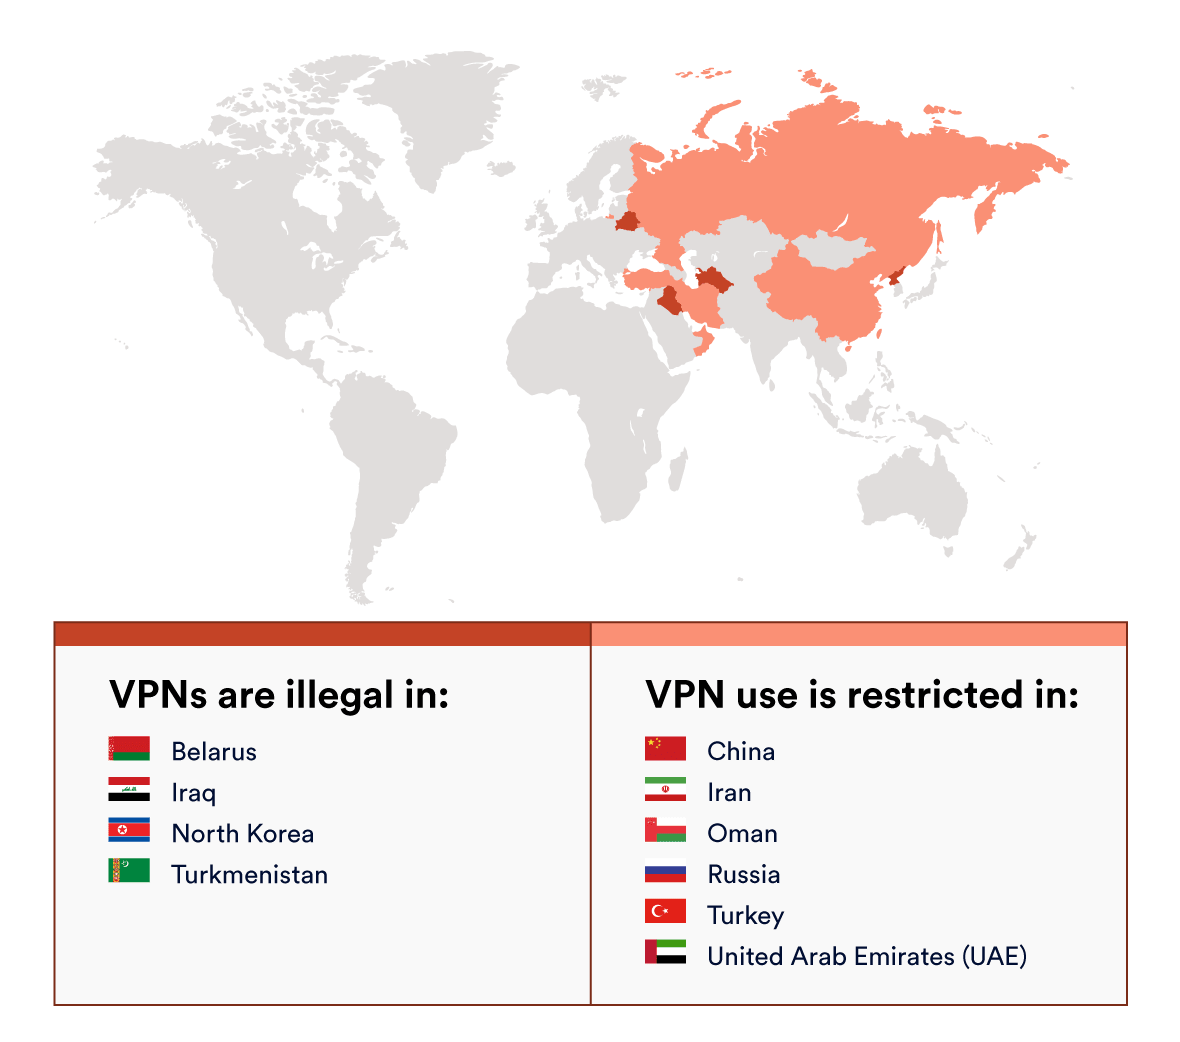 خريطة توضح الأماكن التي تكون فيها شبكات VPN غير قانونية أو مقيدة